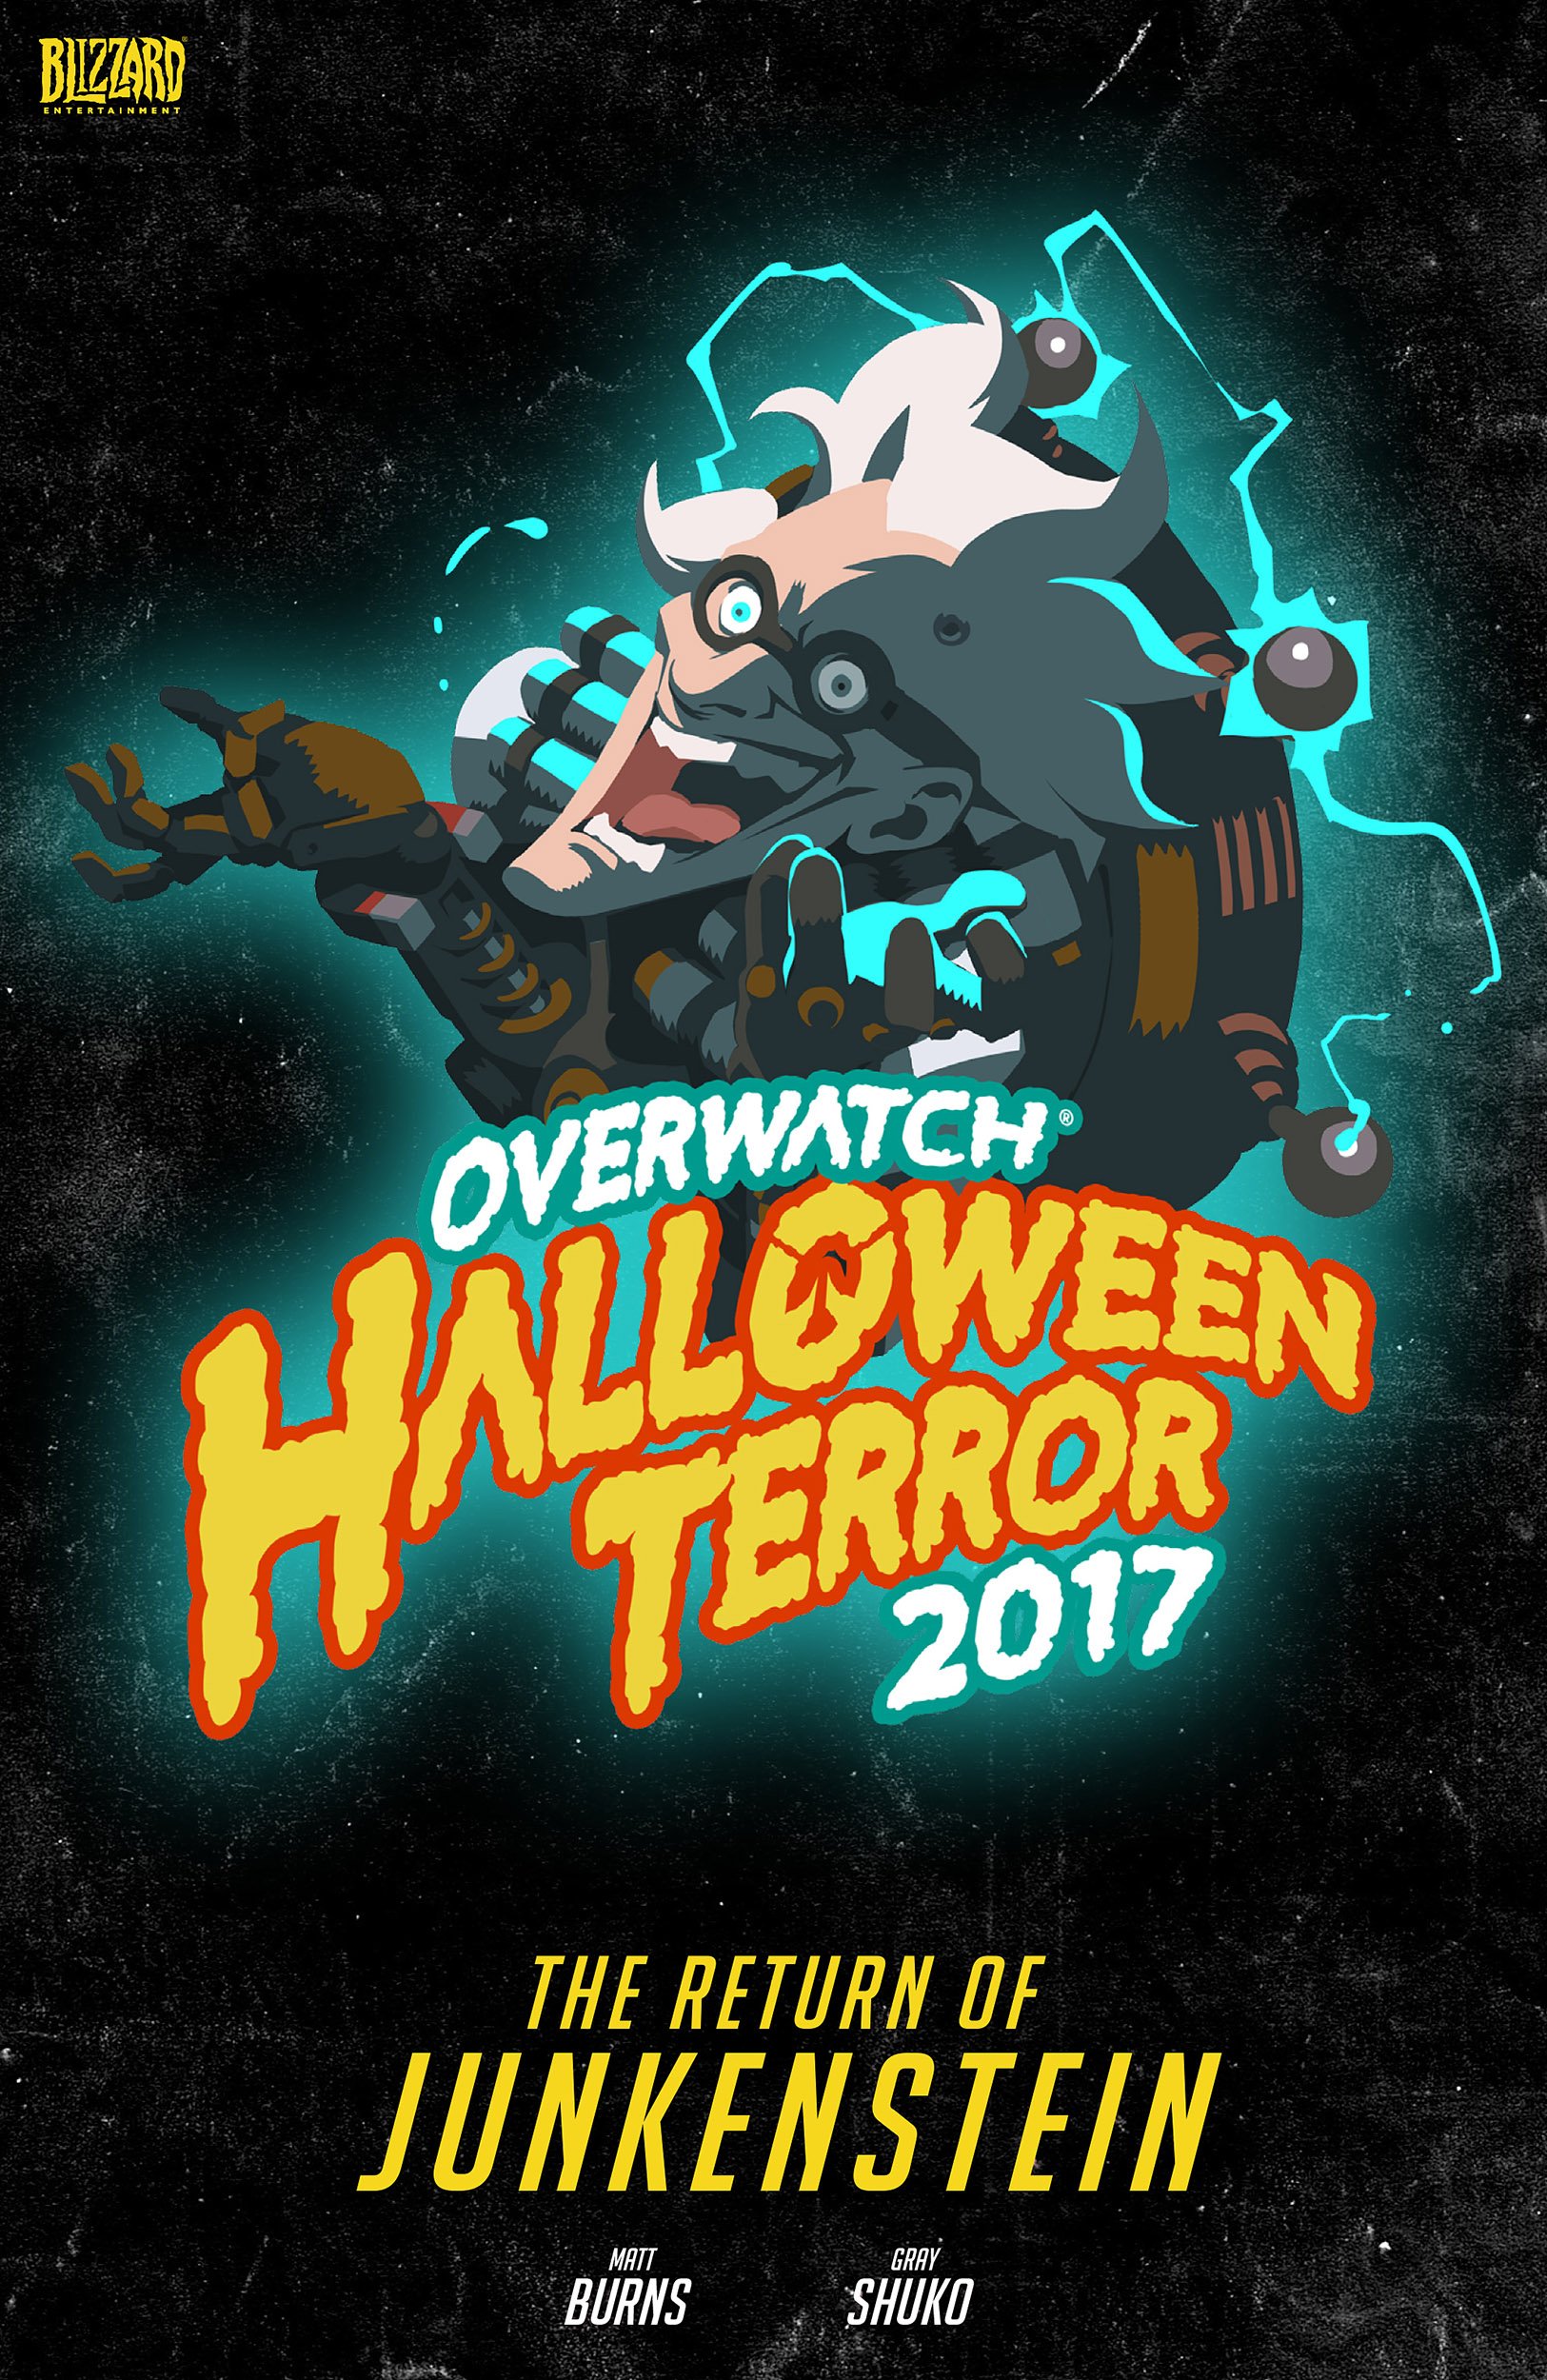 Overwatch - Halloween Terror 2017: The Return of Junkenstein (2017)